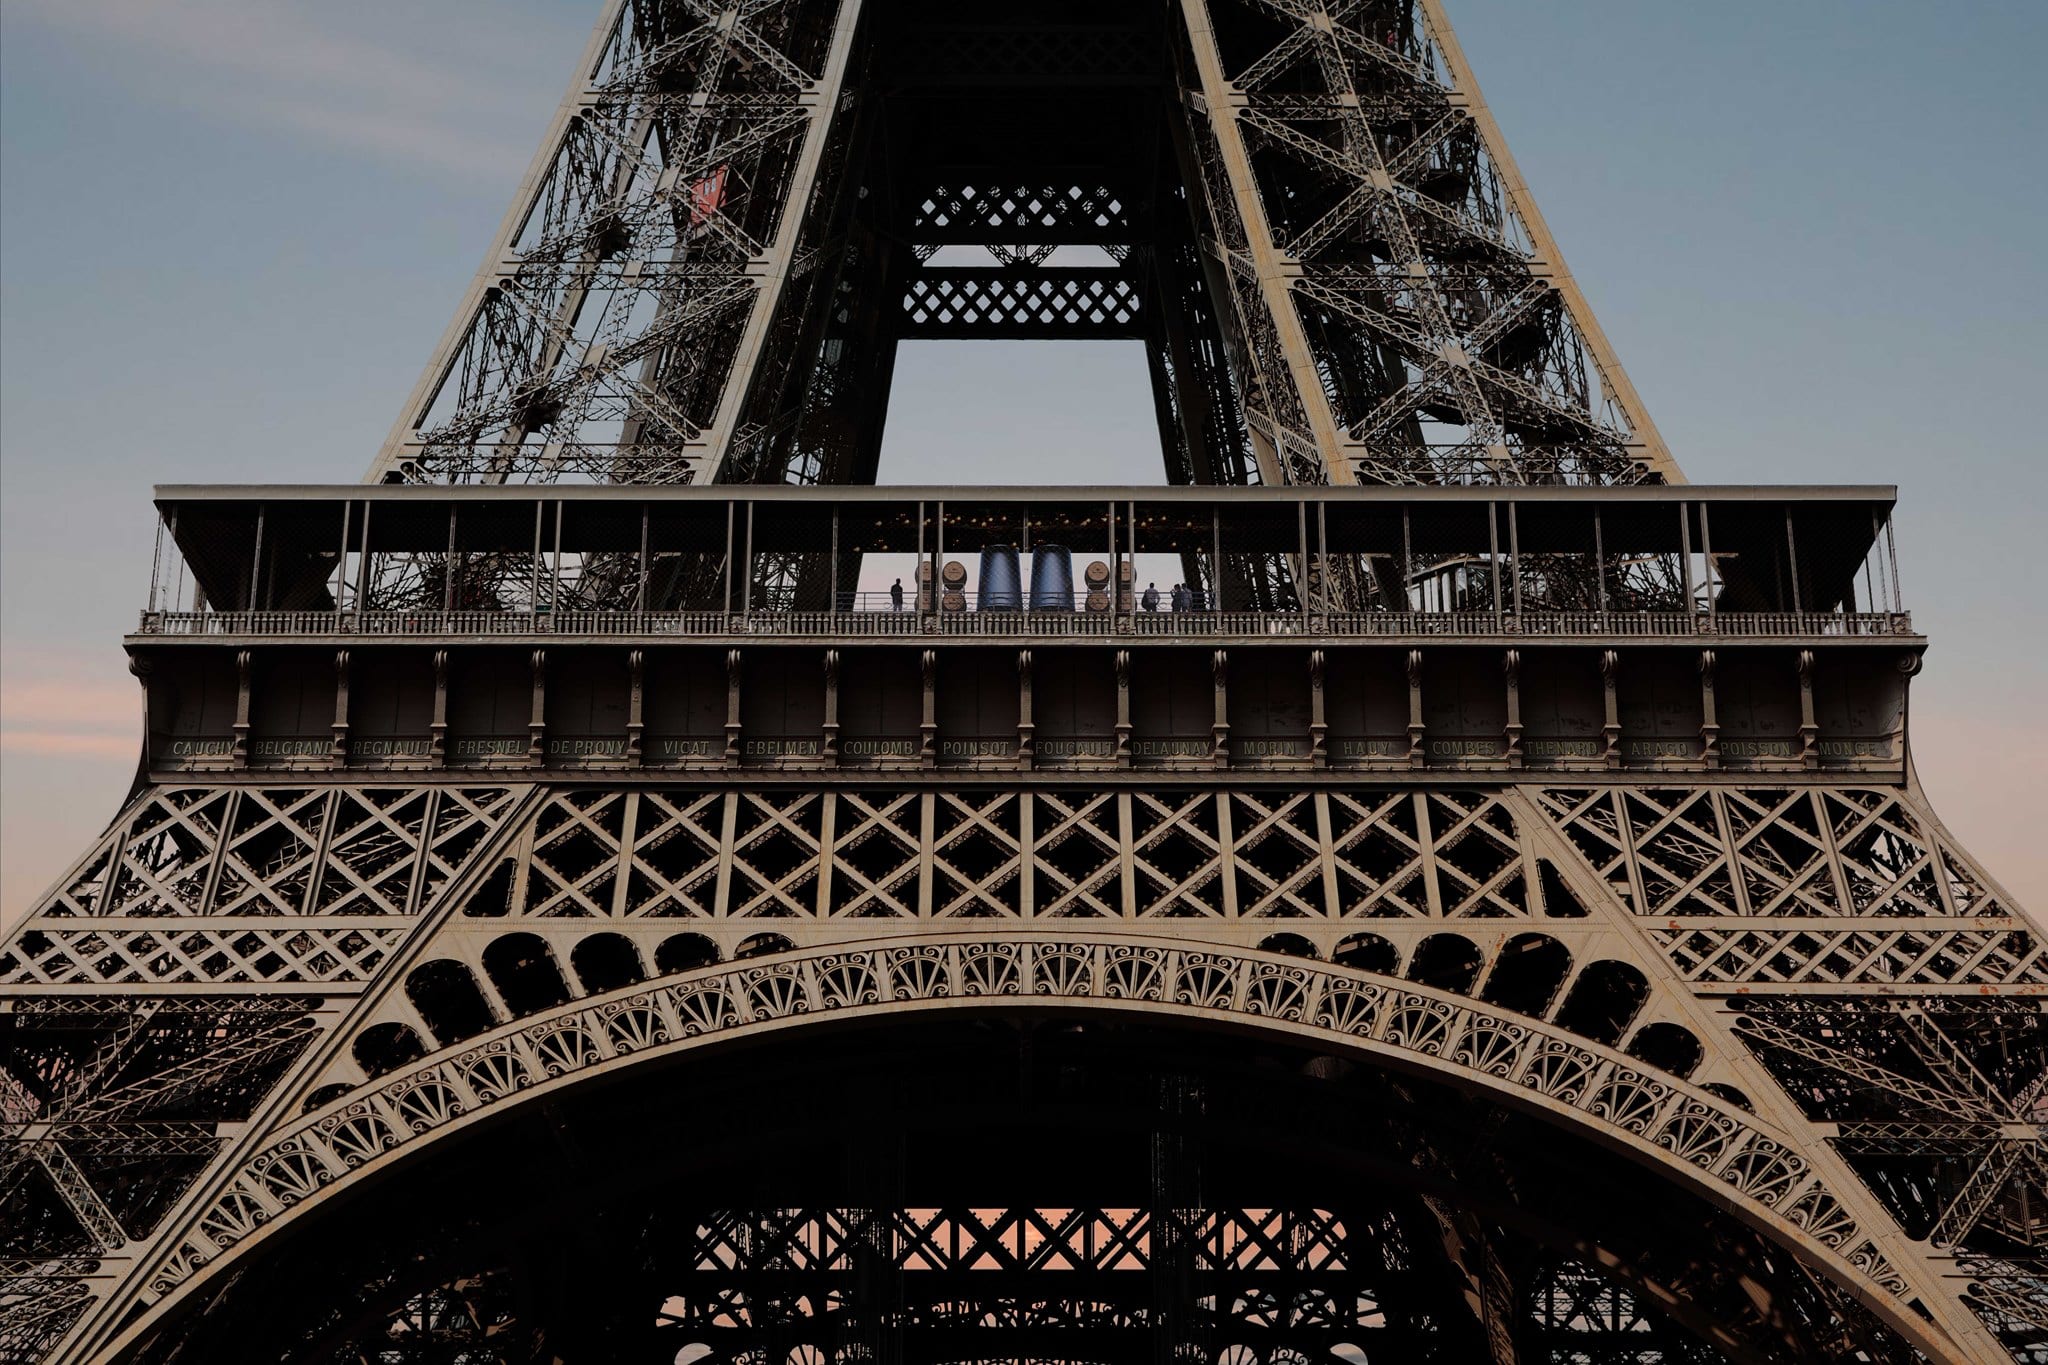 La tour Eiffel vista da sotto, con la cantina al primo piano